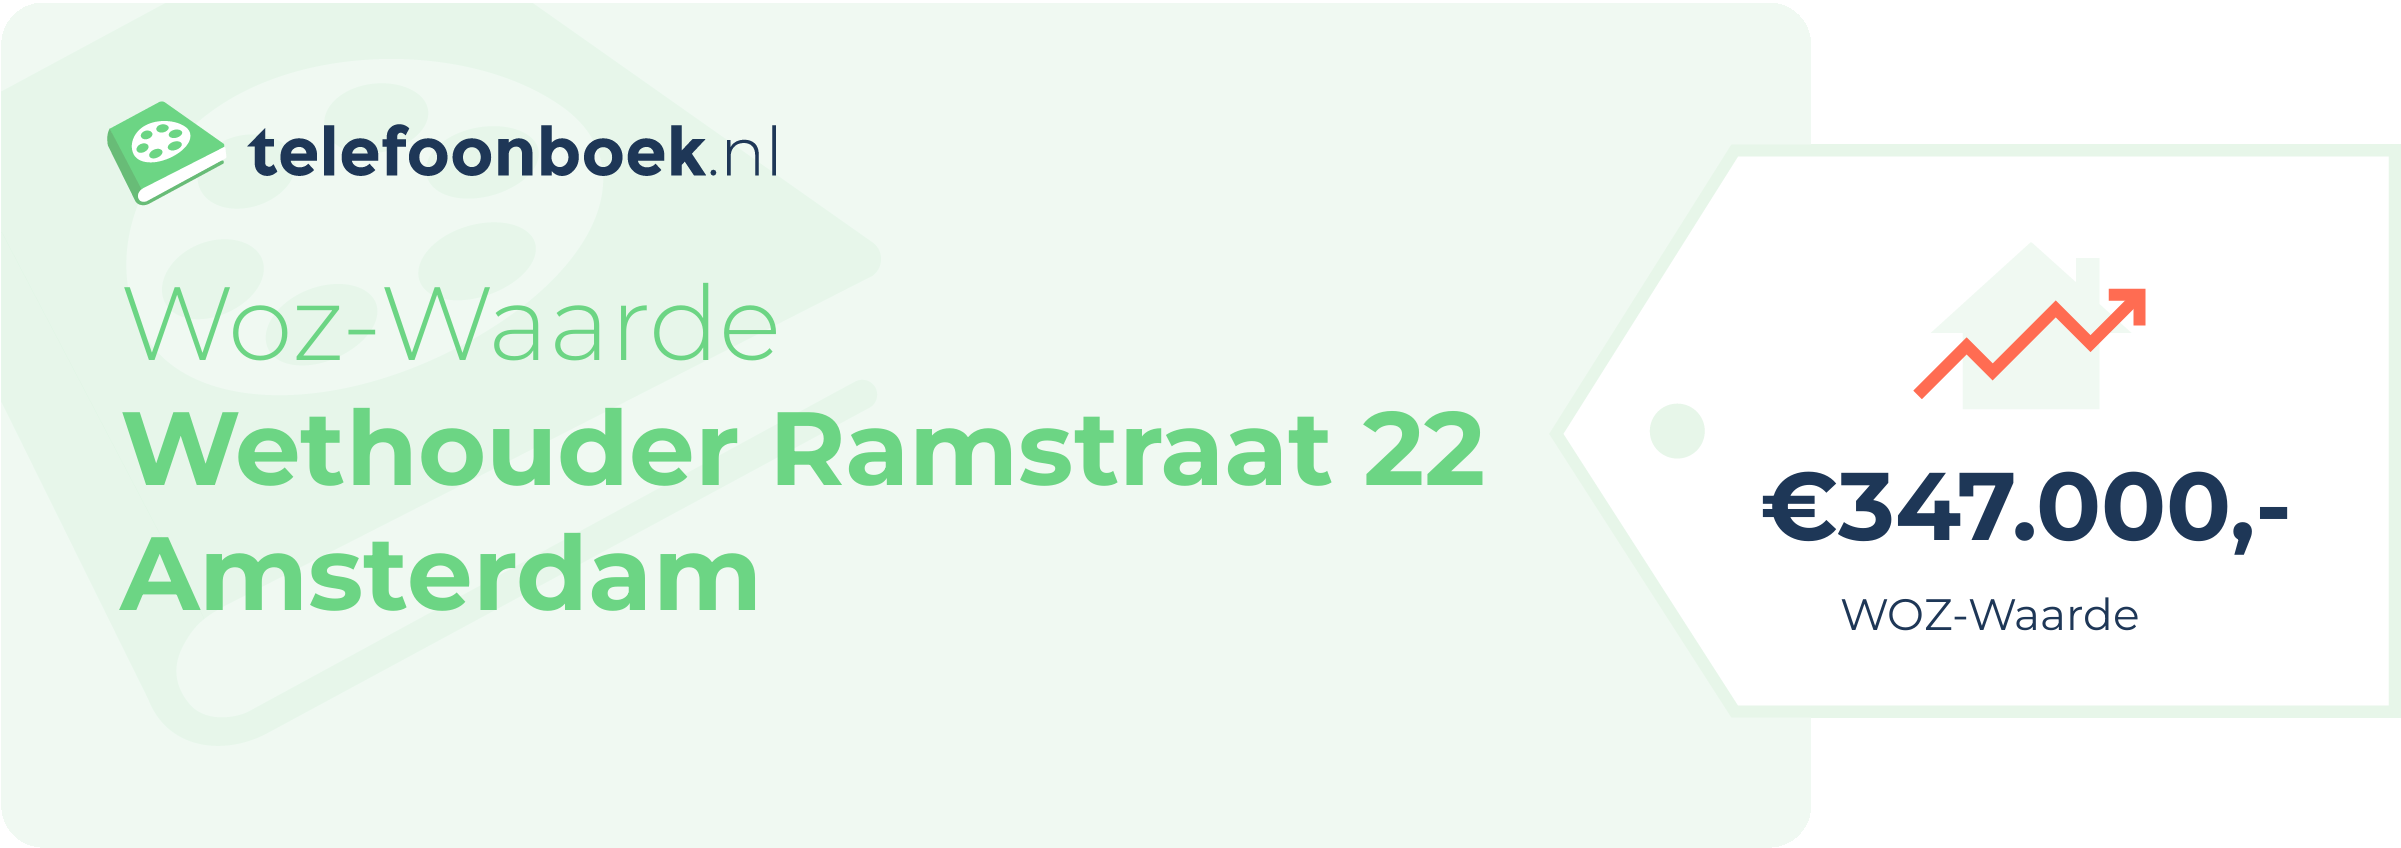 WOZ-waarde Wethouder Ramstraat 22 Amsterdam